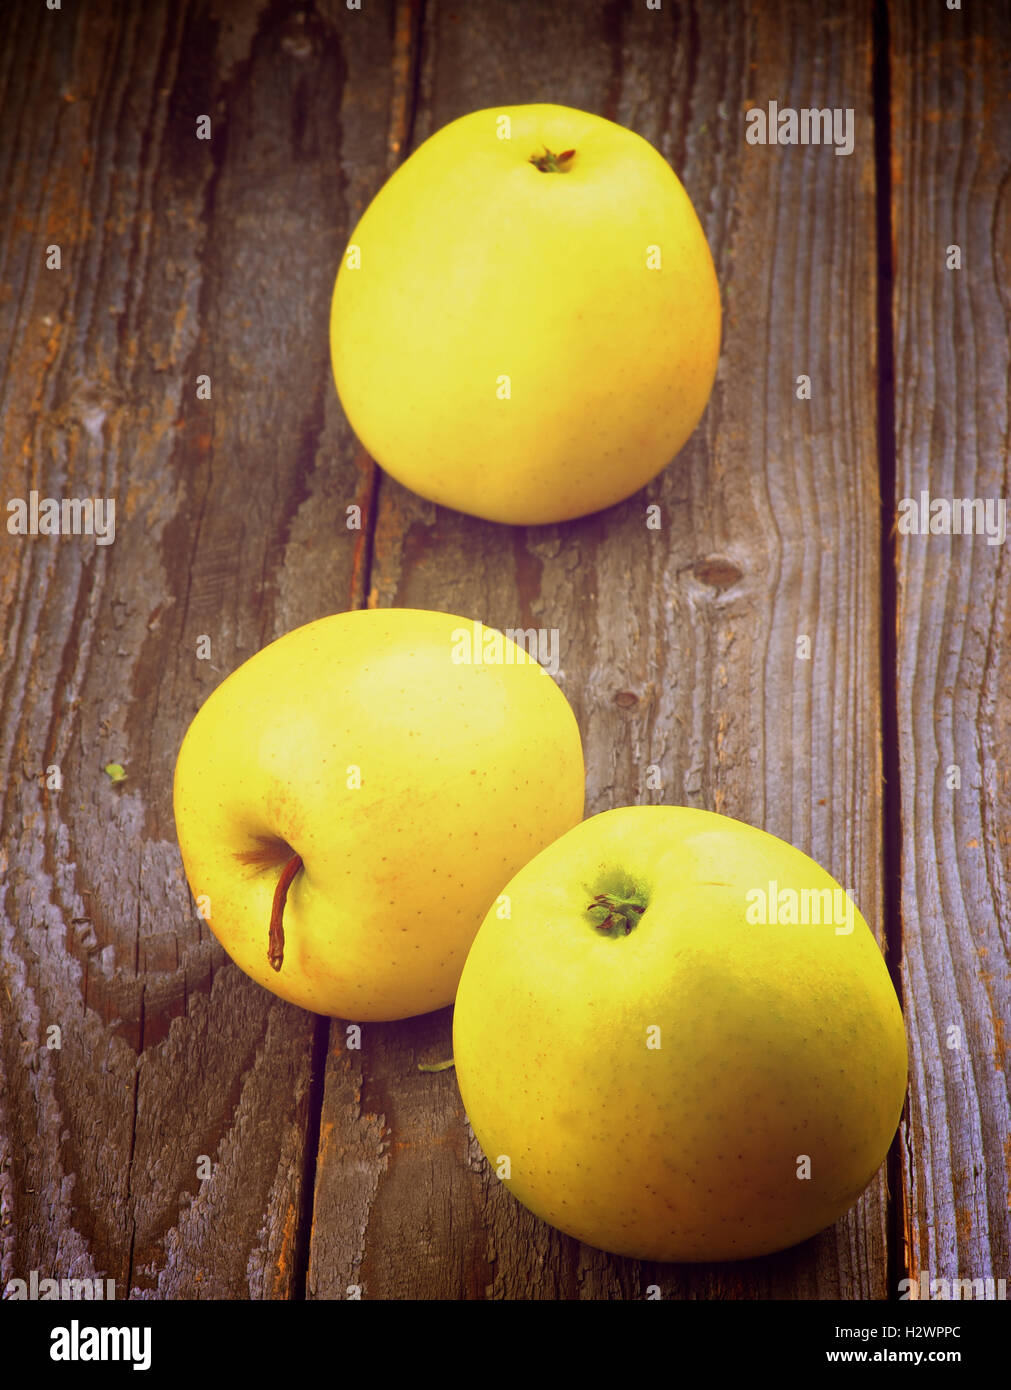 Yellow Apples Stock Photo